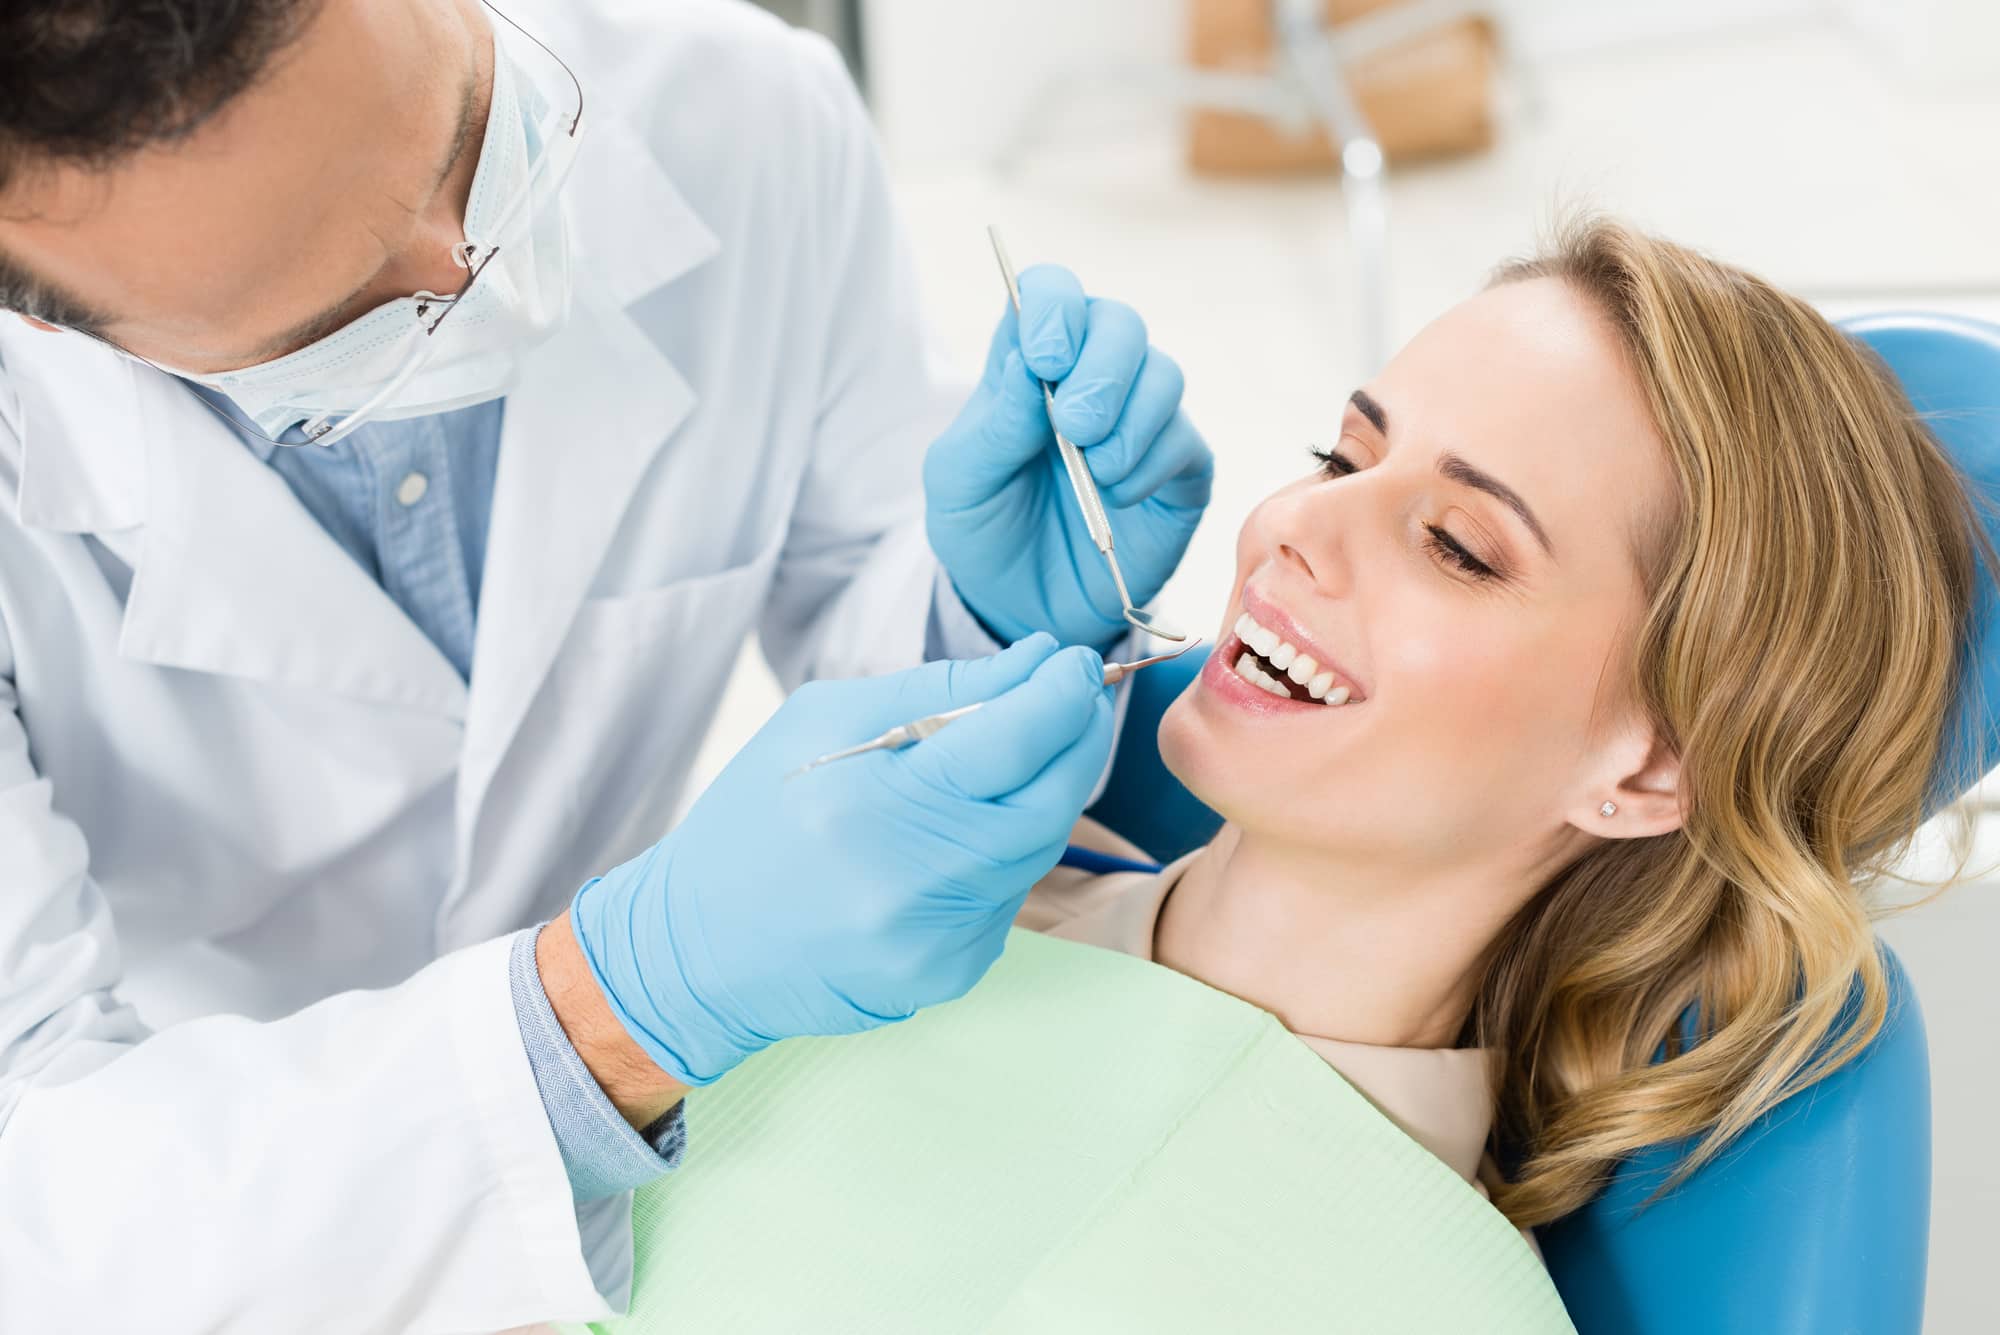 Doctor treats patient teeth in modern dental clinic